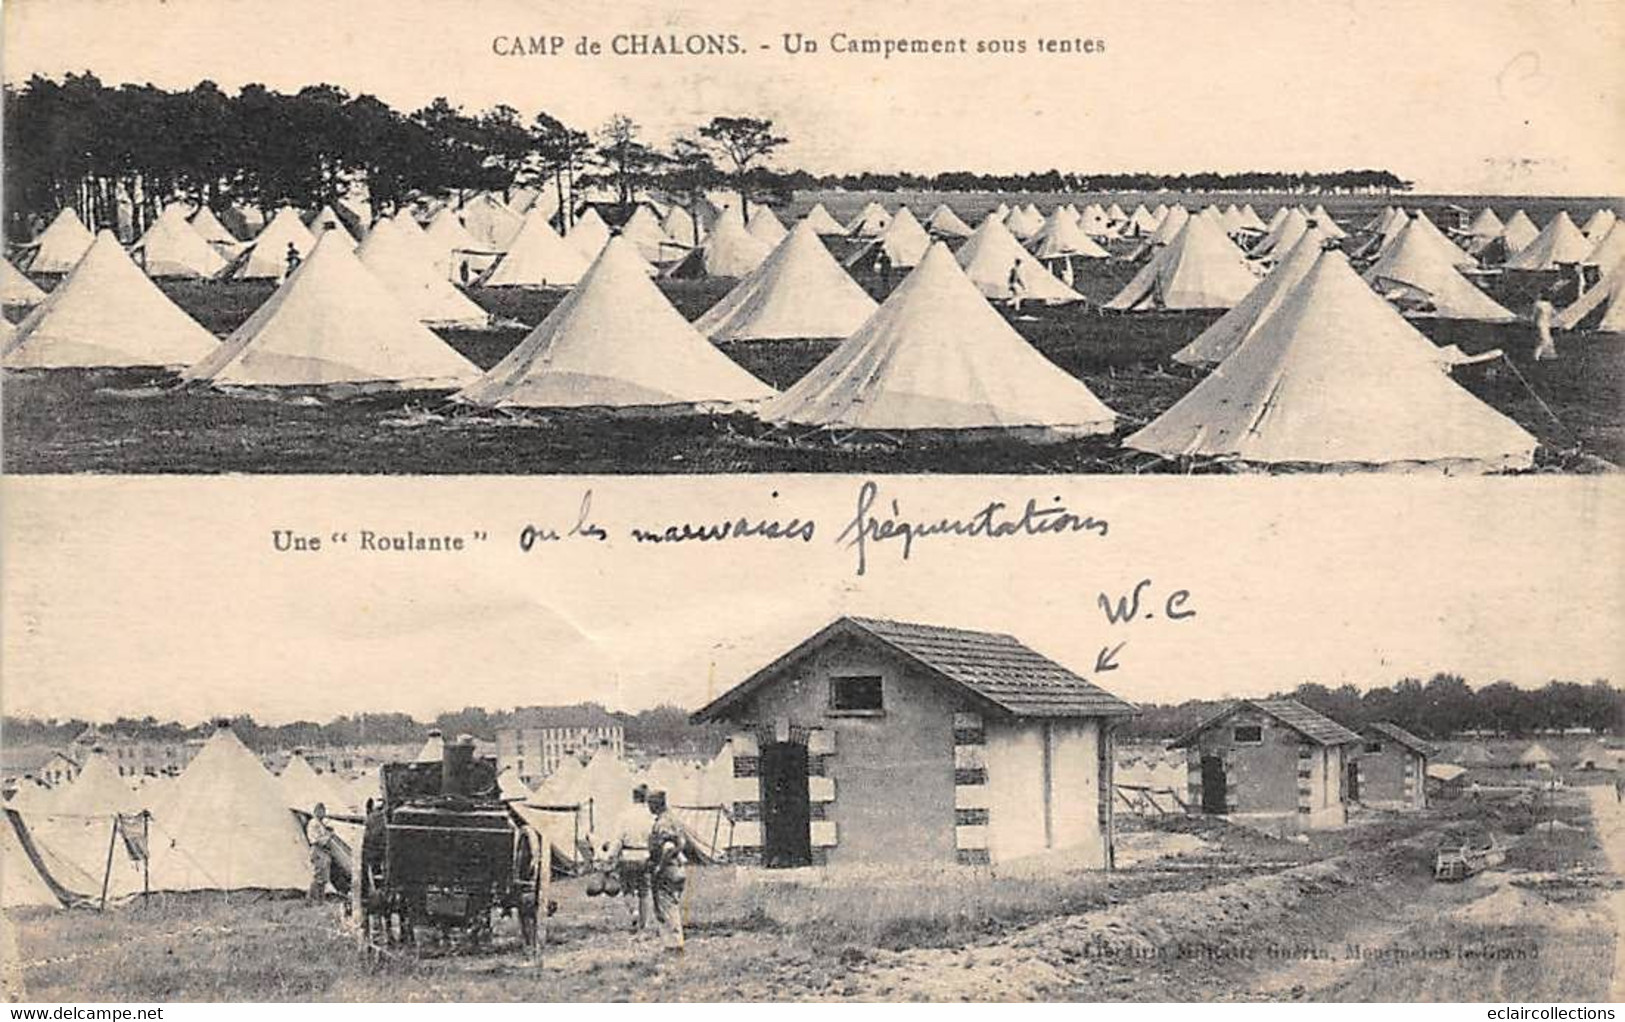 Châlons sur Marne       51        Le Camp. Lot de  12 cartes diverses .Militaria. Chevaux       (voir scan)